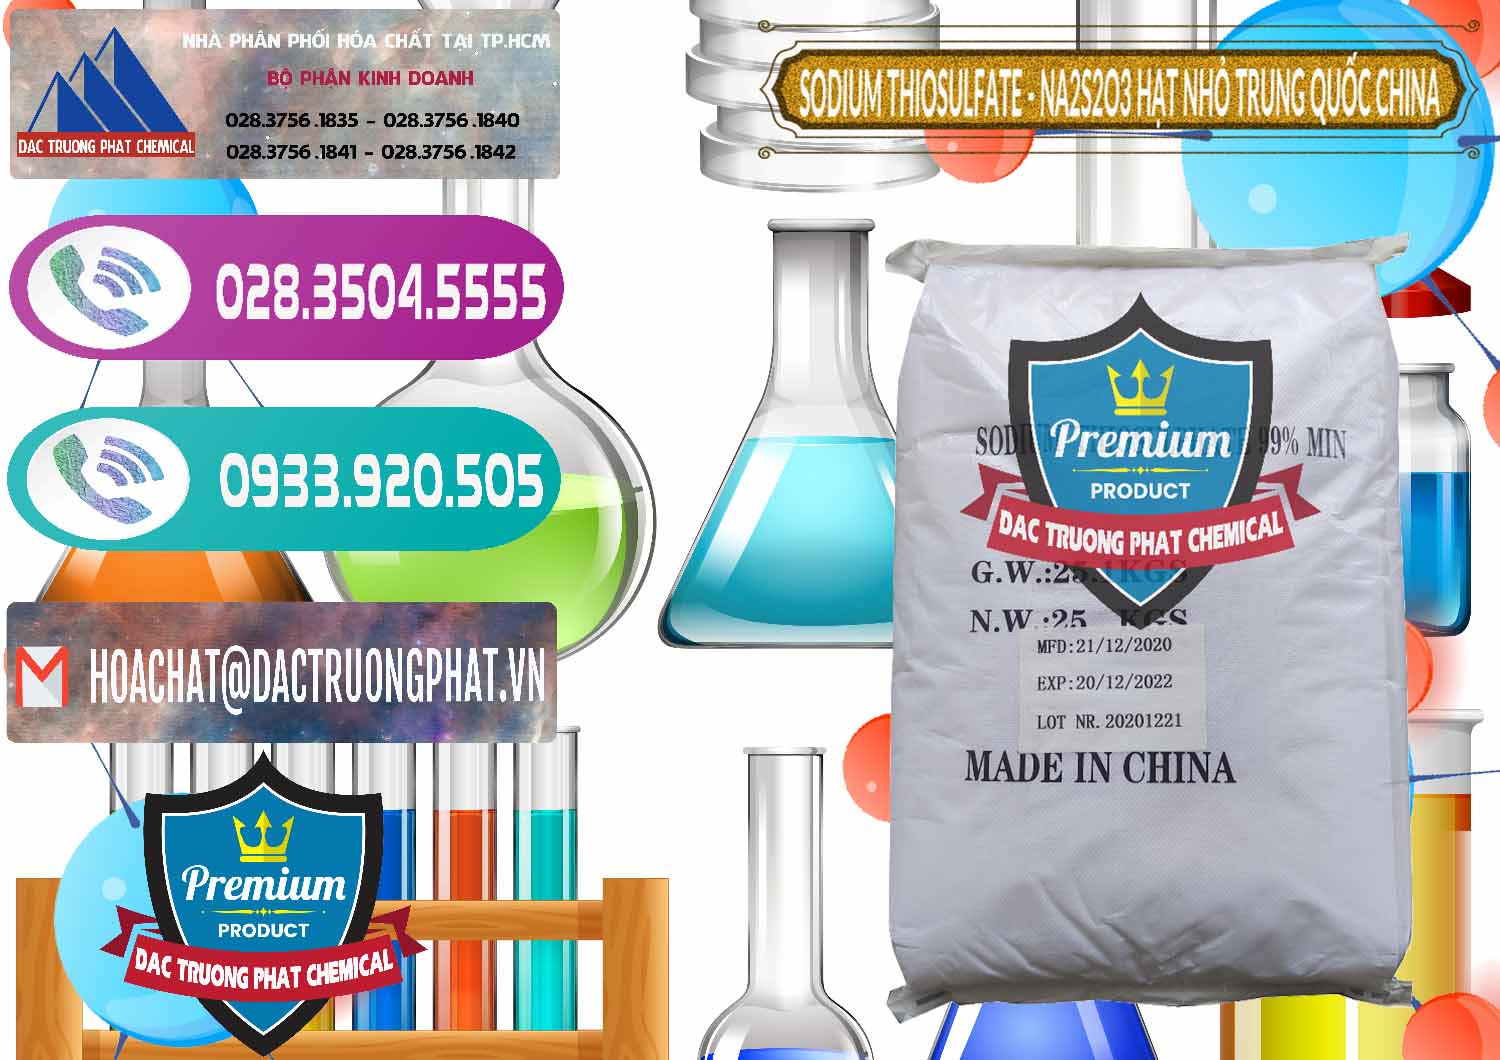 Cty chuyên bán & phân phối Sodium Thiosulfate - NA2S2O3 Hạt Nhỏ Trung Quốc China - 0204 - Phân phối và cung cấp hóa chất tại TP.HCM - hoachatxulynuoc.com